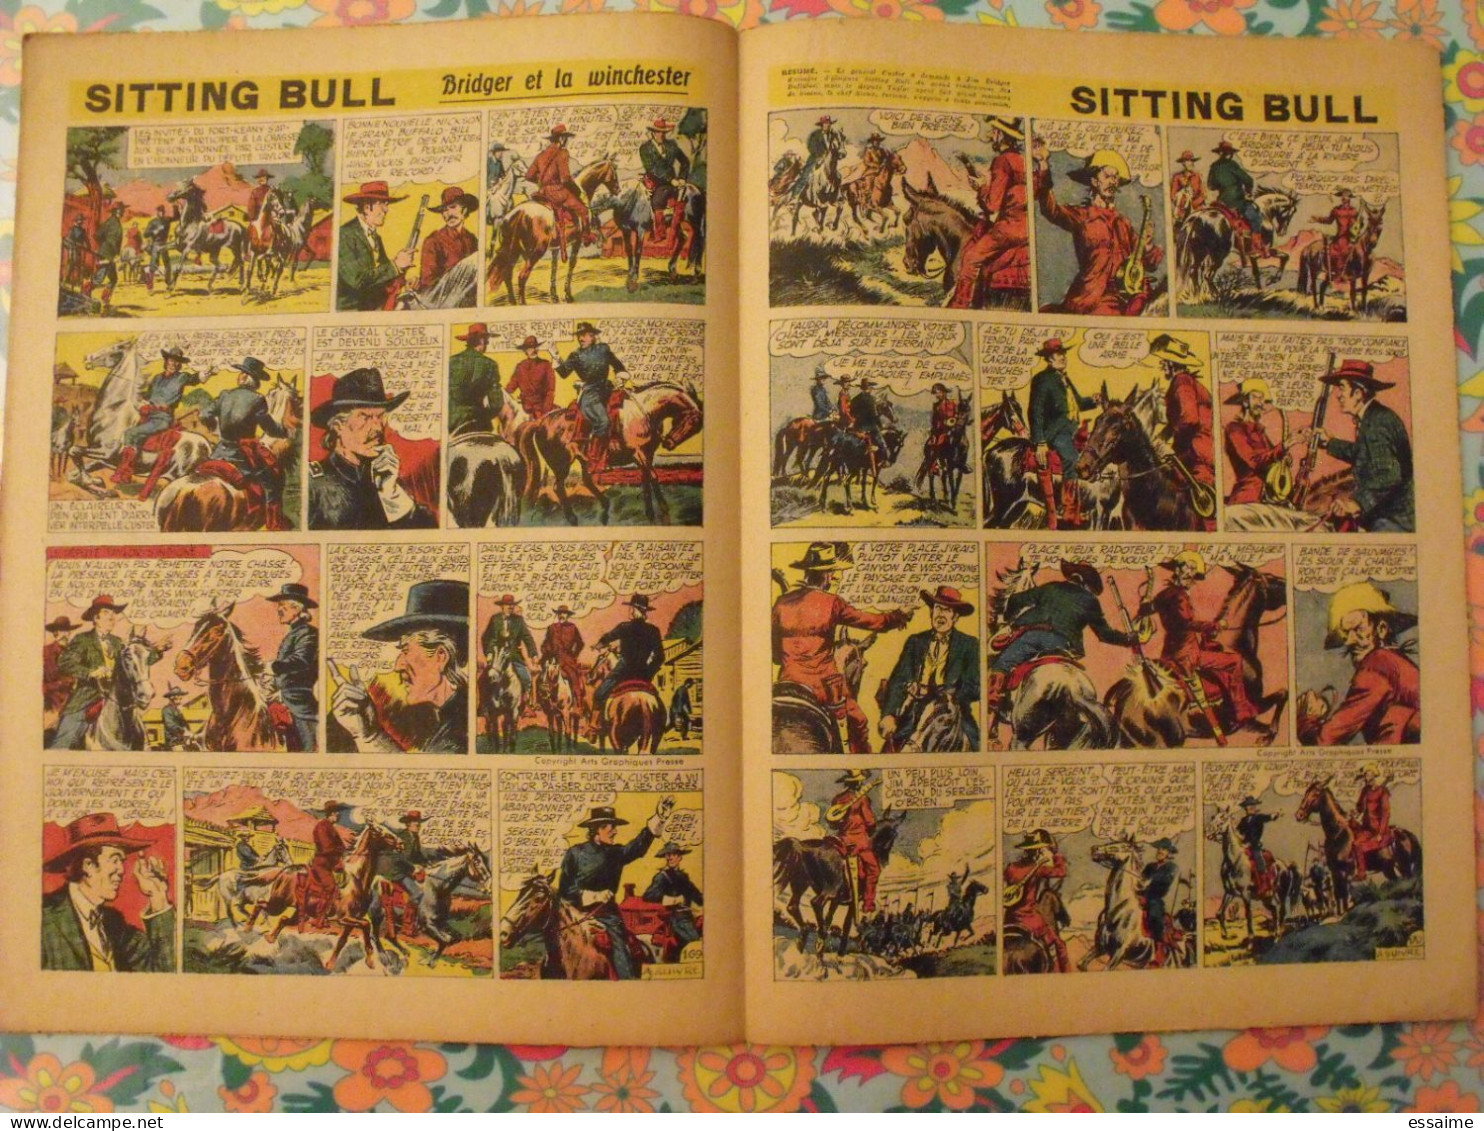 10 numéros de Coq Hardi de 1951. Sitting Bull, jacques canada, roland, marco polo, père noël, choucas. A redécouvrir